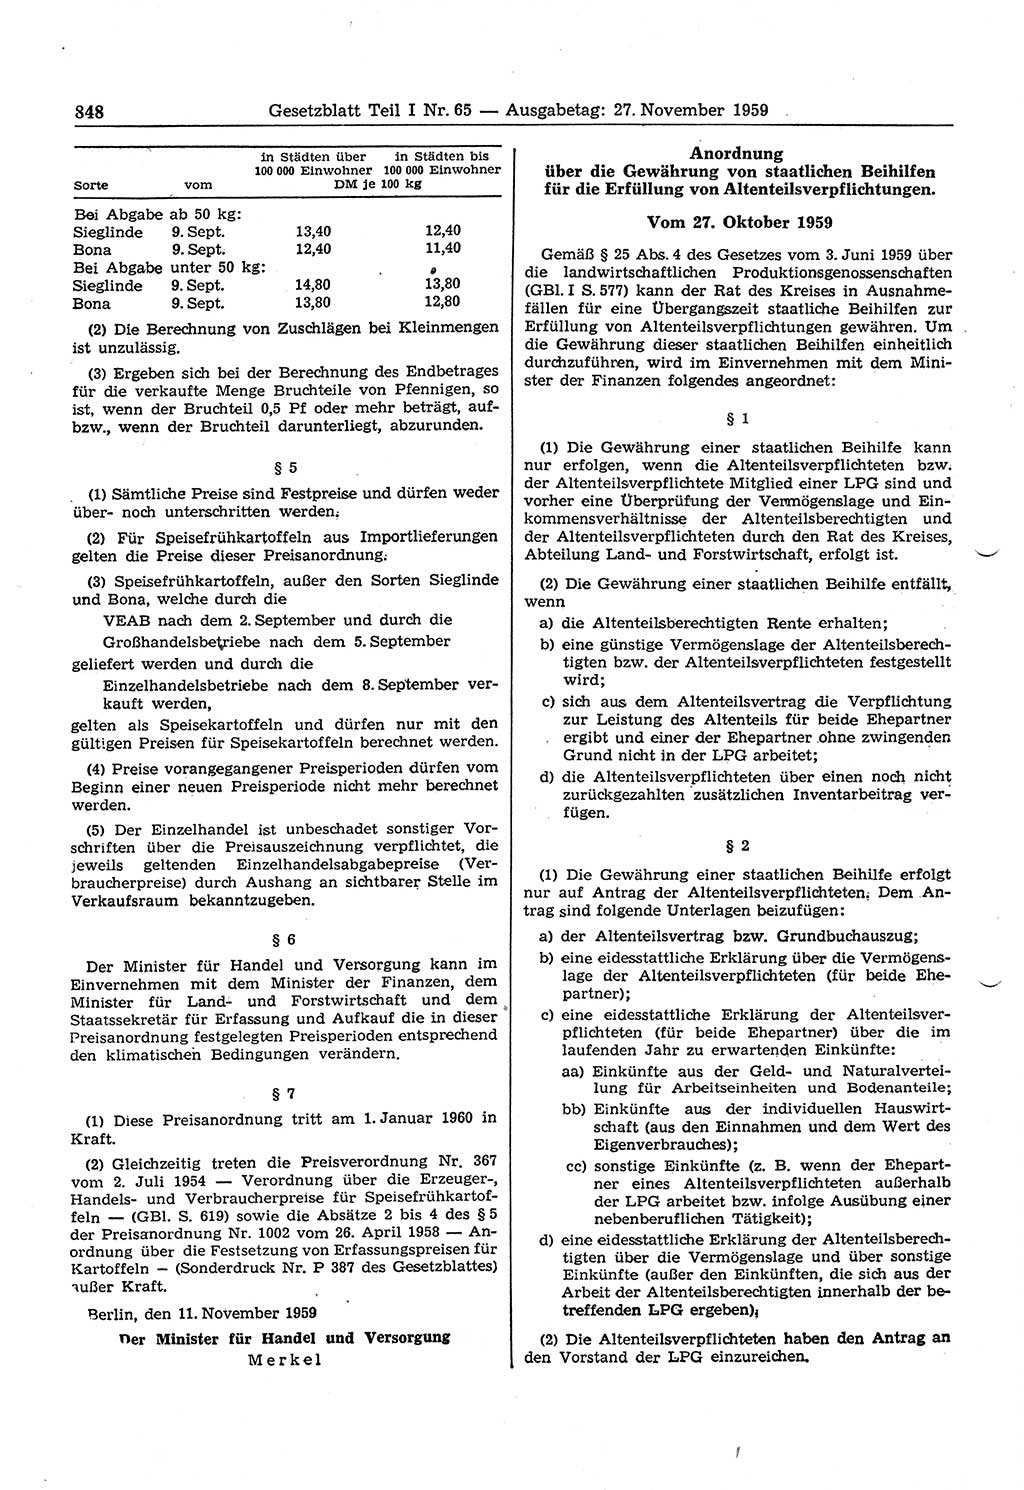 Gesetzblatt (GBl.) der Deutschen Demokratischen Republik (DDR) Teil Ⅰ 1959, Seite 848 (GBl. DDR Ⅰ 1959, S. 848)